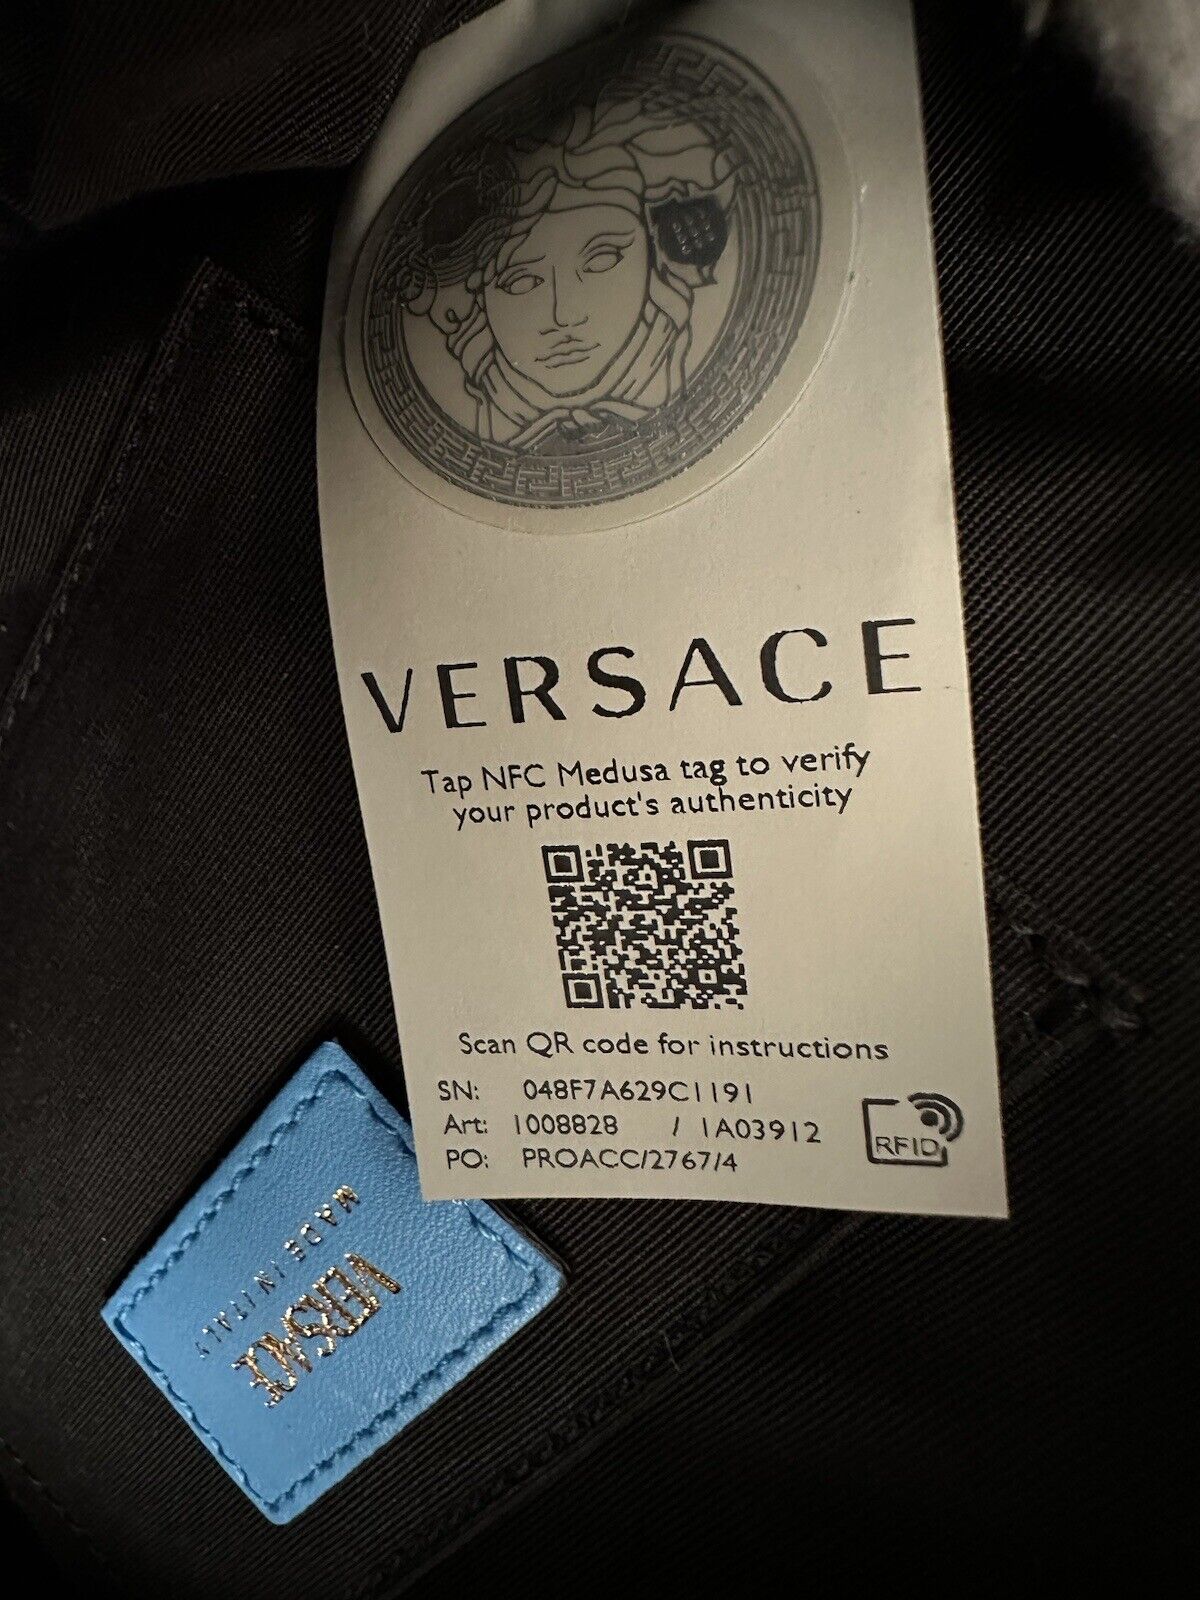 Neu mit Etikett: 1275 $ Versace Mittelgroße Umhängetasche aus gestepptem Lammleder in Blau 1008828 Italien 